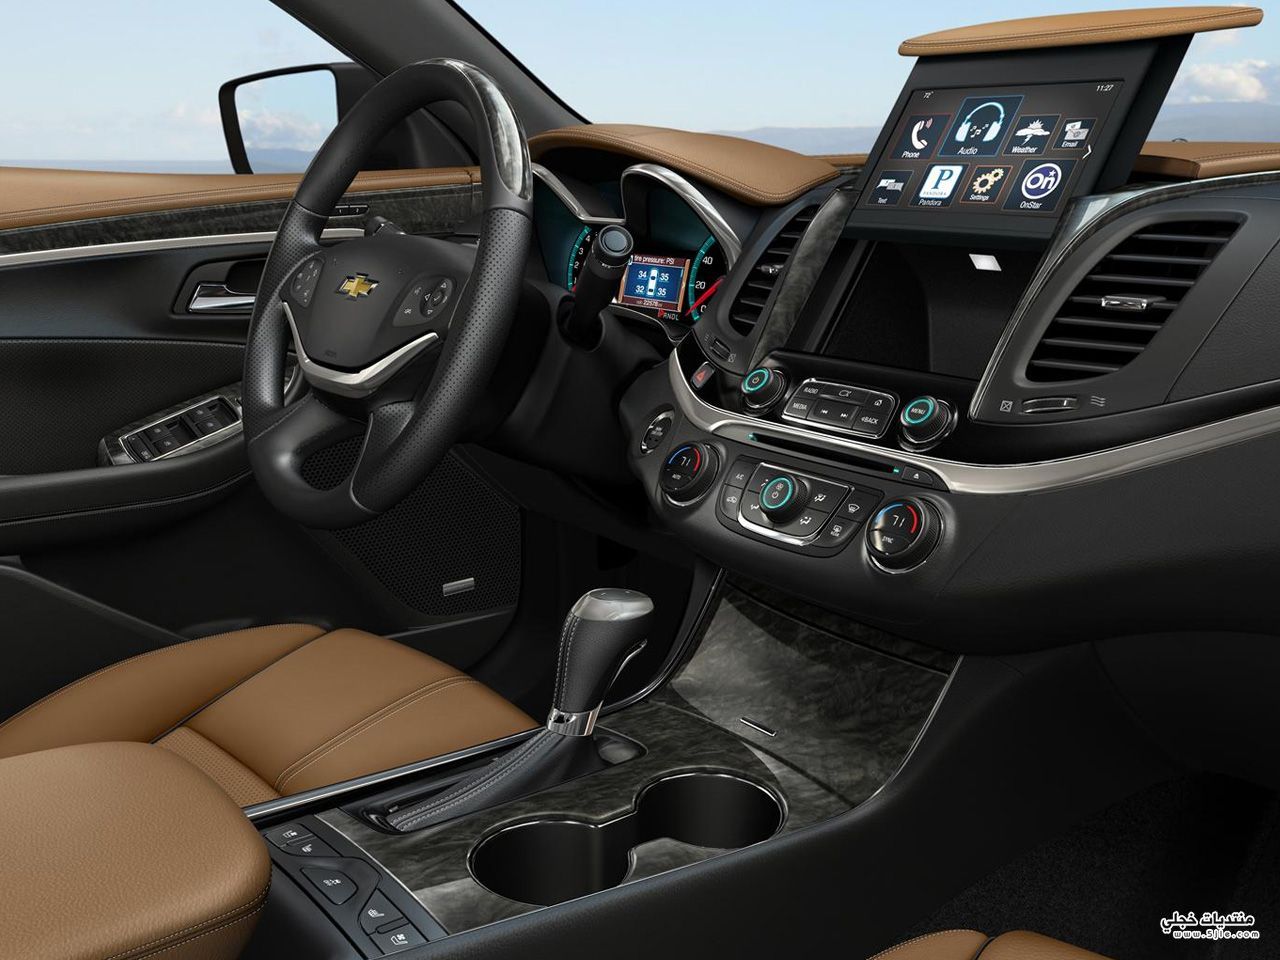   2014 Chevrolet Impala